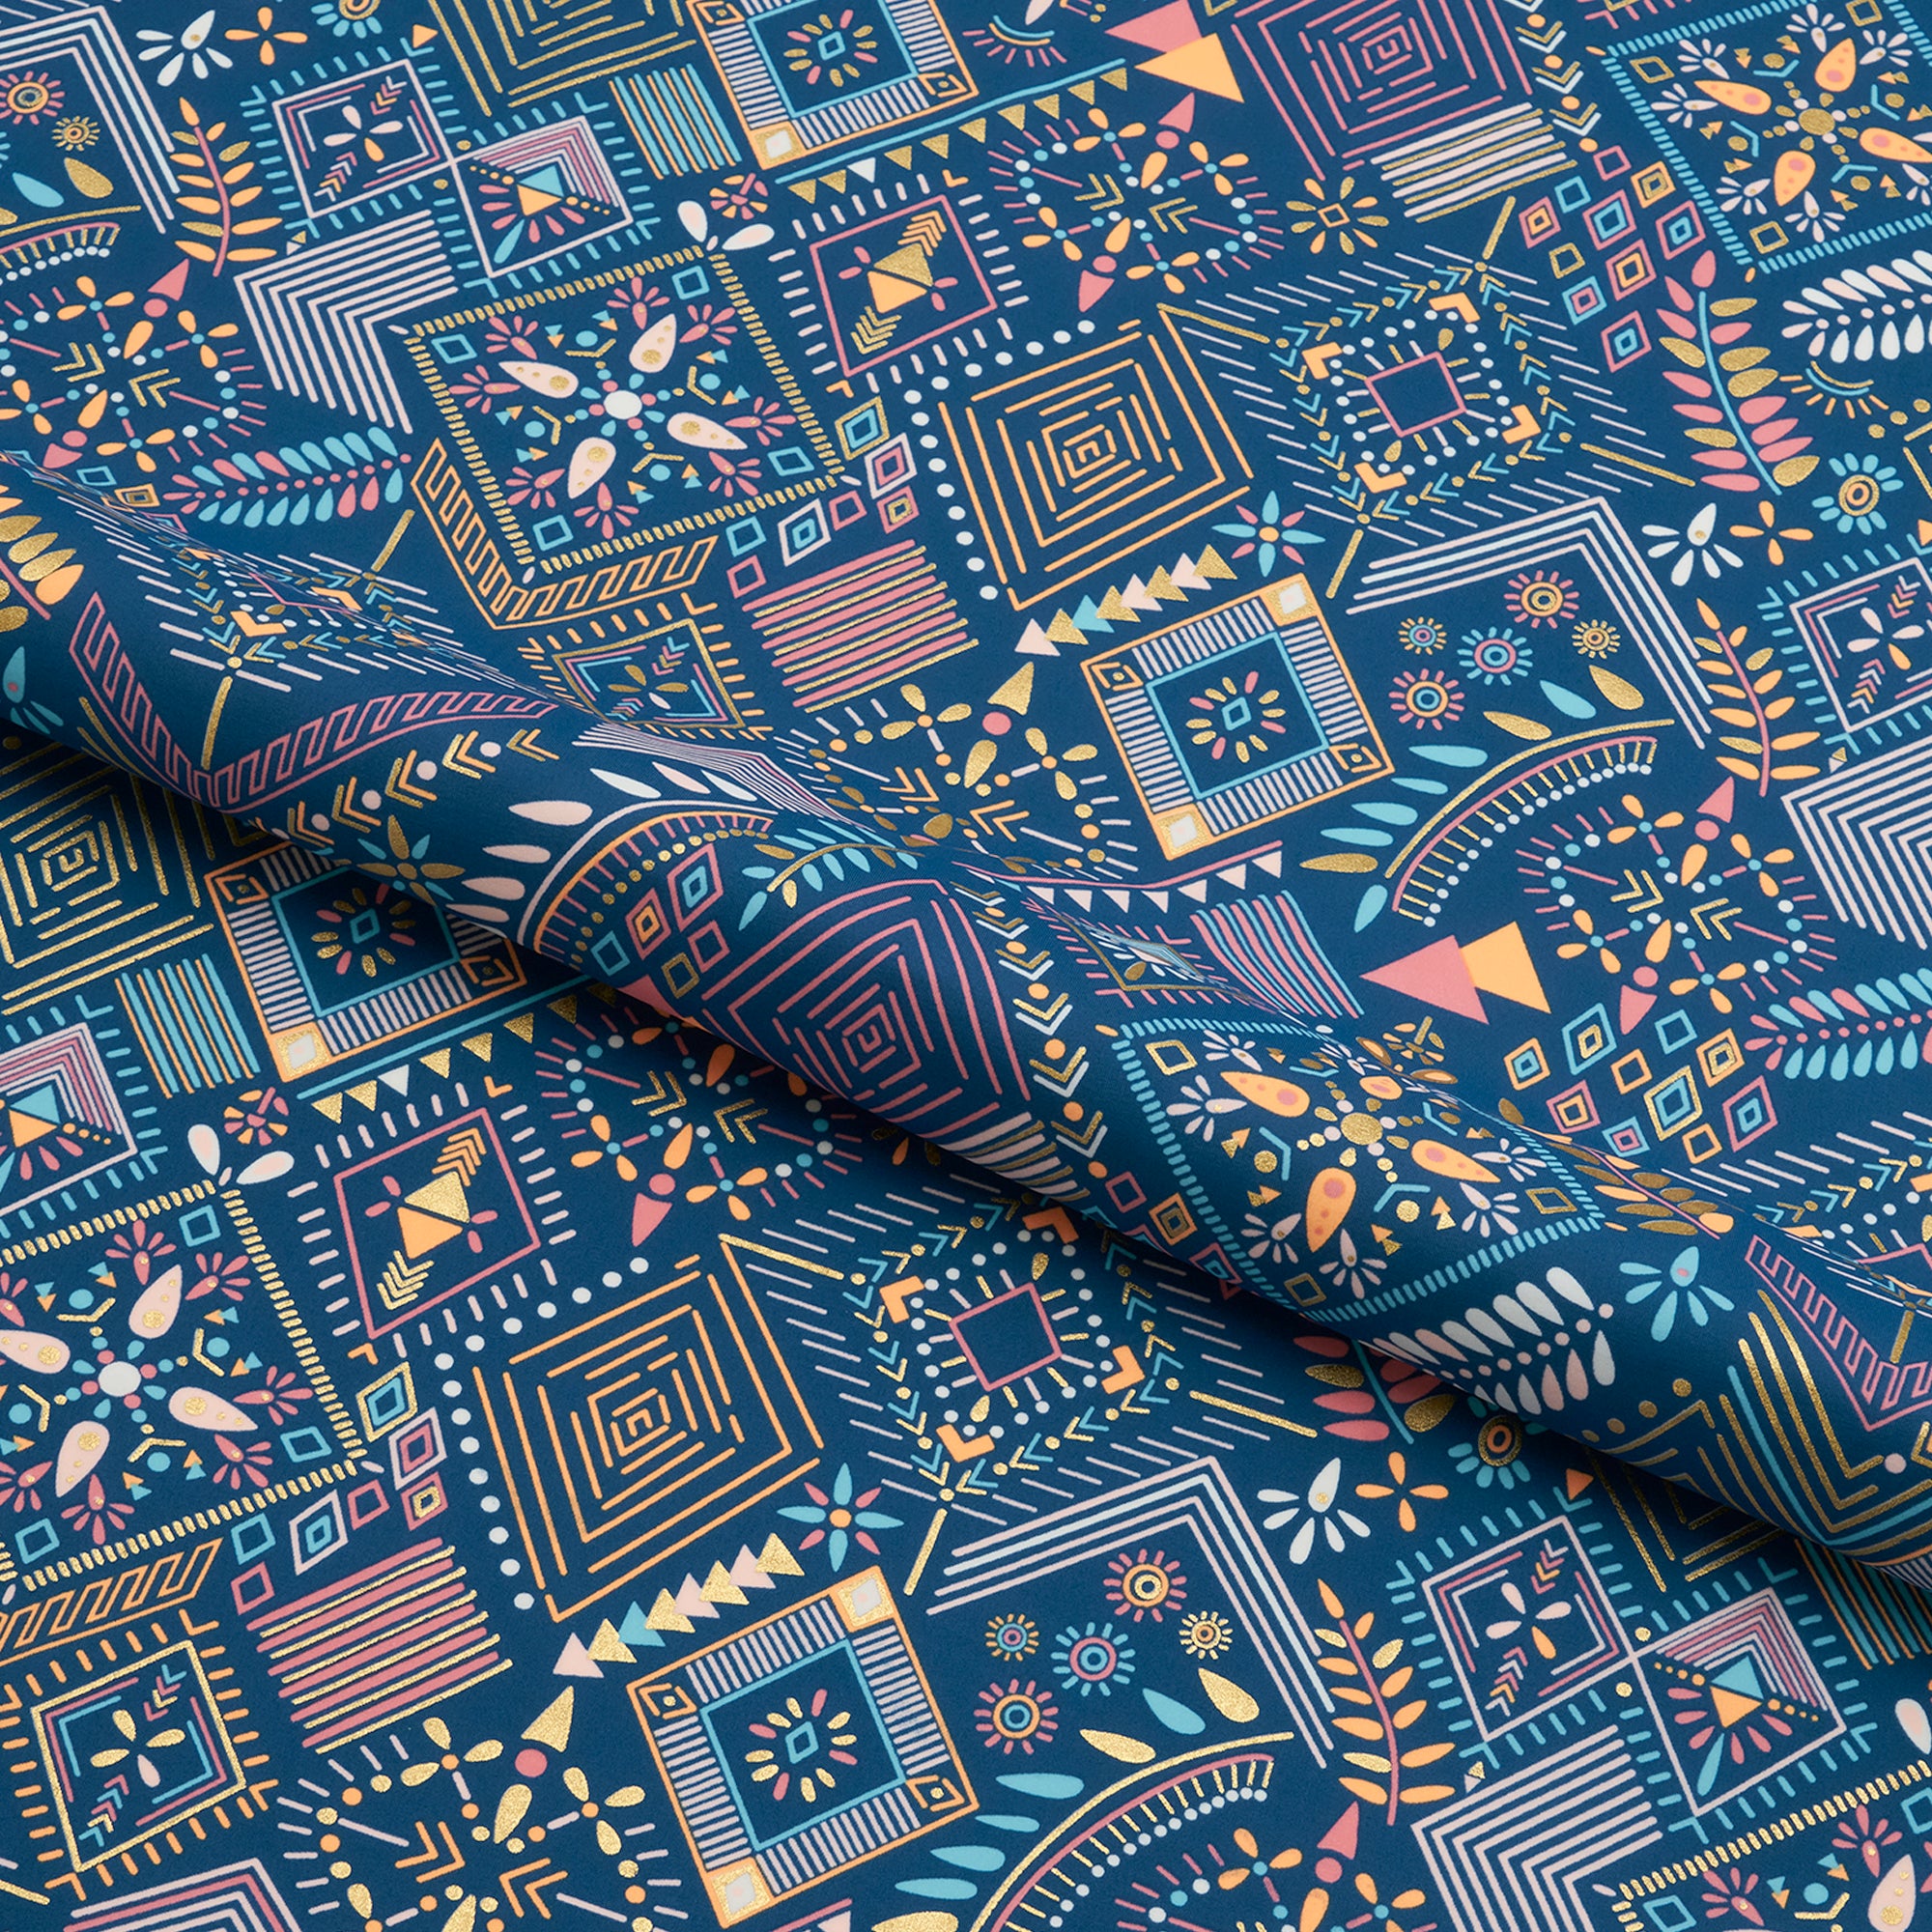 Shiny Nylon Spandex Fabric | Blue Moon Fabrics